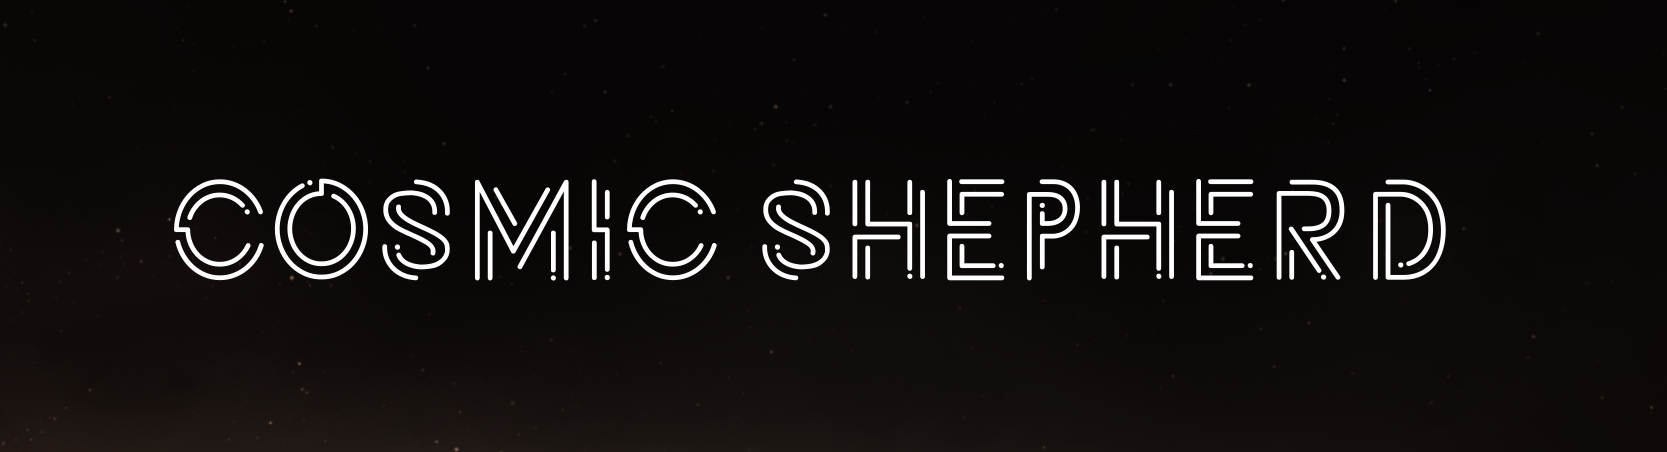 Cosmic Shepherd